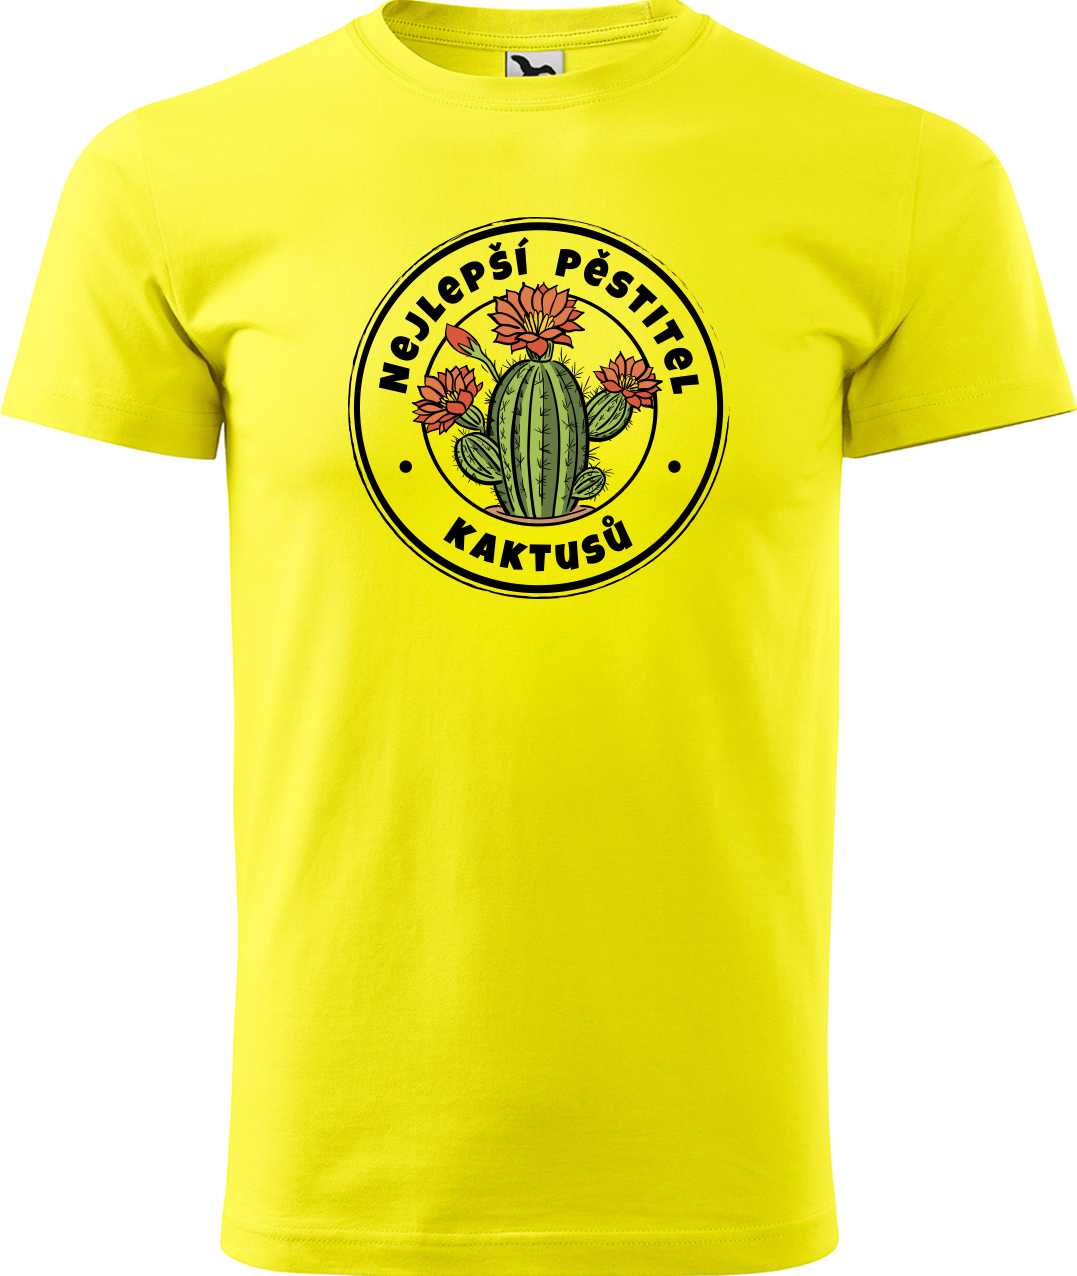 Tričko s kaktusem - Nejlepší pěstitel kaktusů Velikost: L, Barva: Žlutá (04)